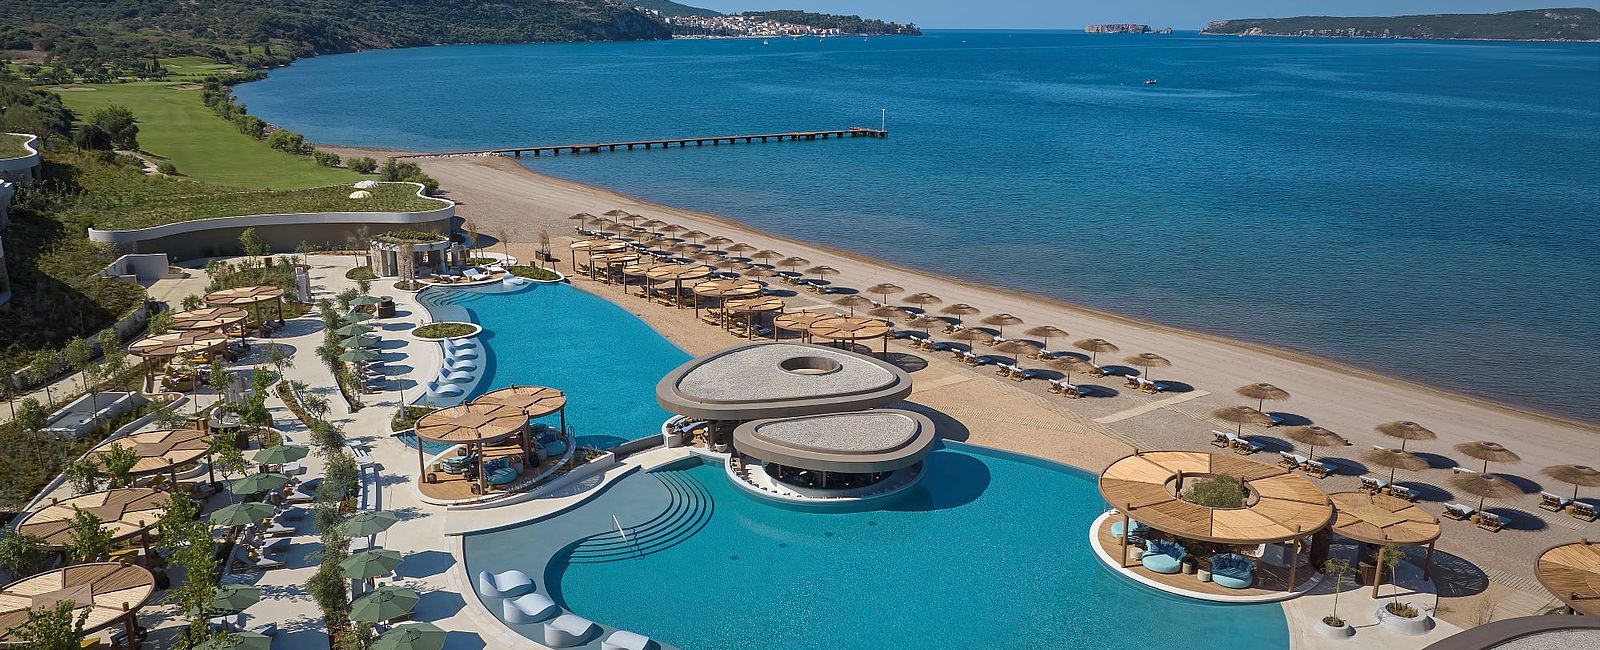 VERY SPECIAL HOTEL
 Mandarin Oriental, Costa Navarino 
 Neues Hotel-Juwel in Griechenland 